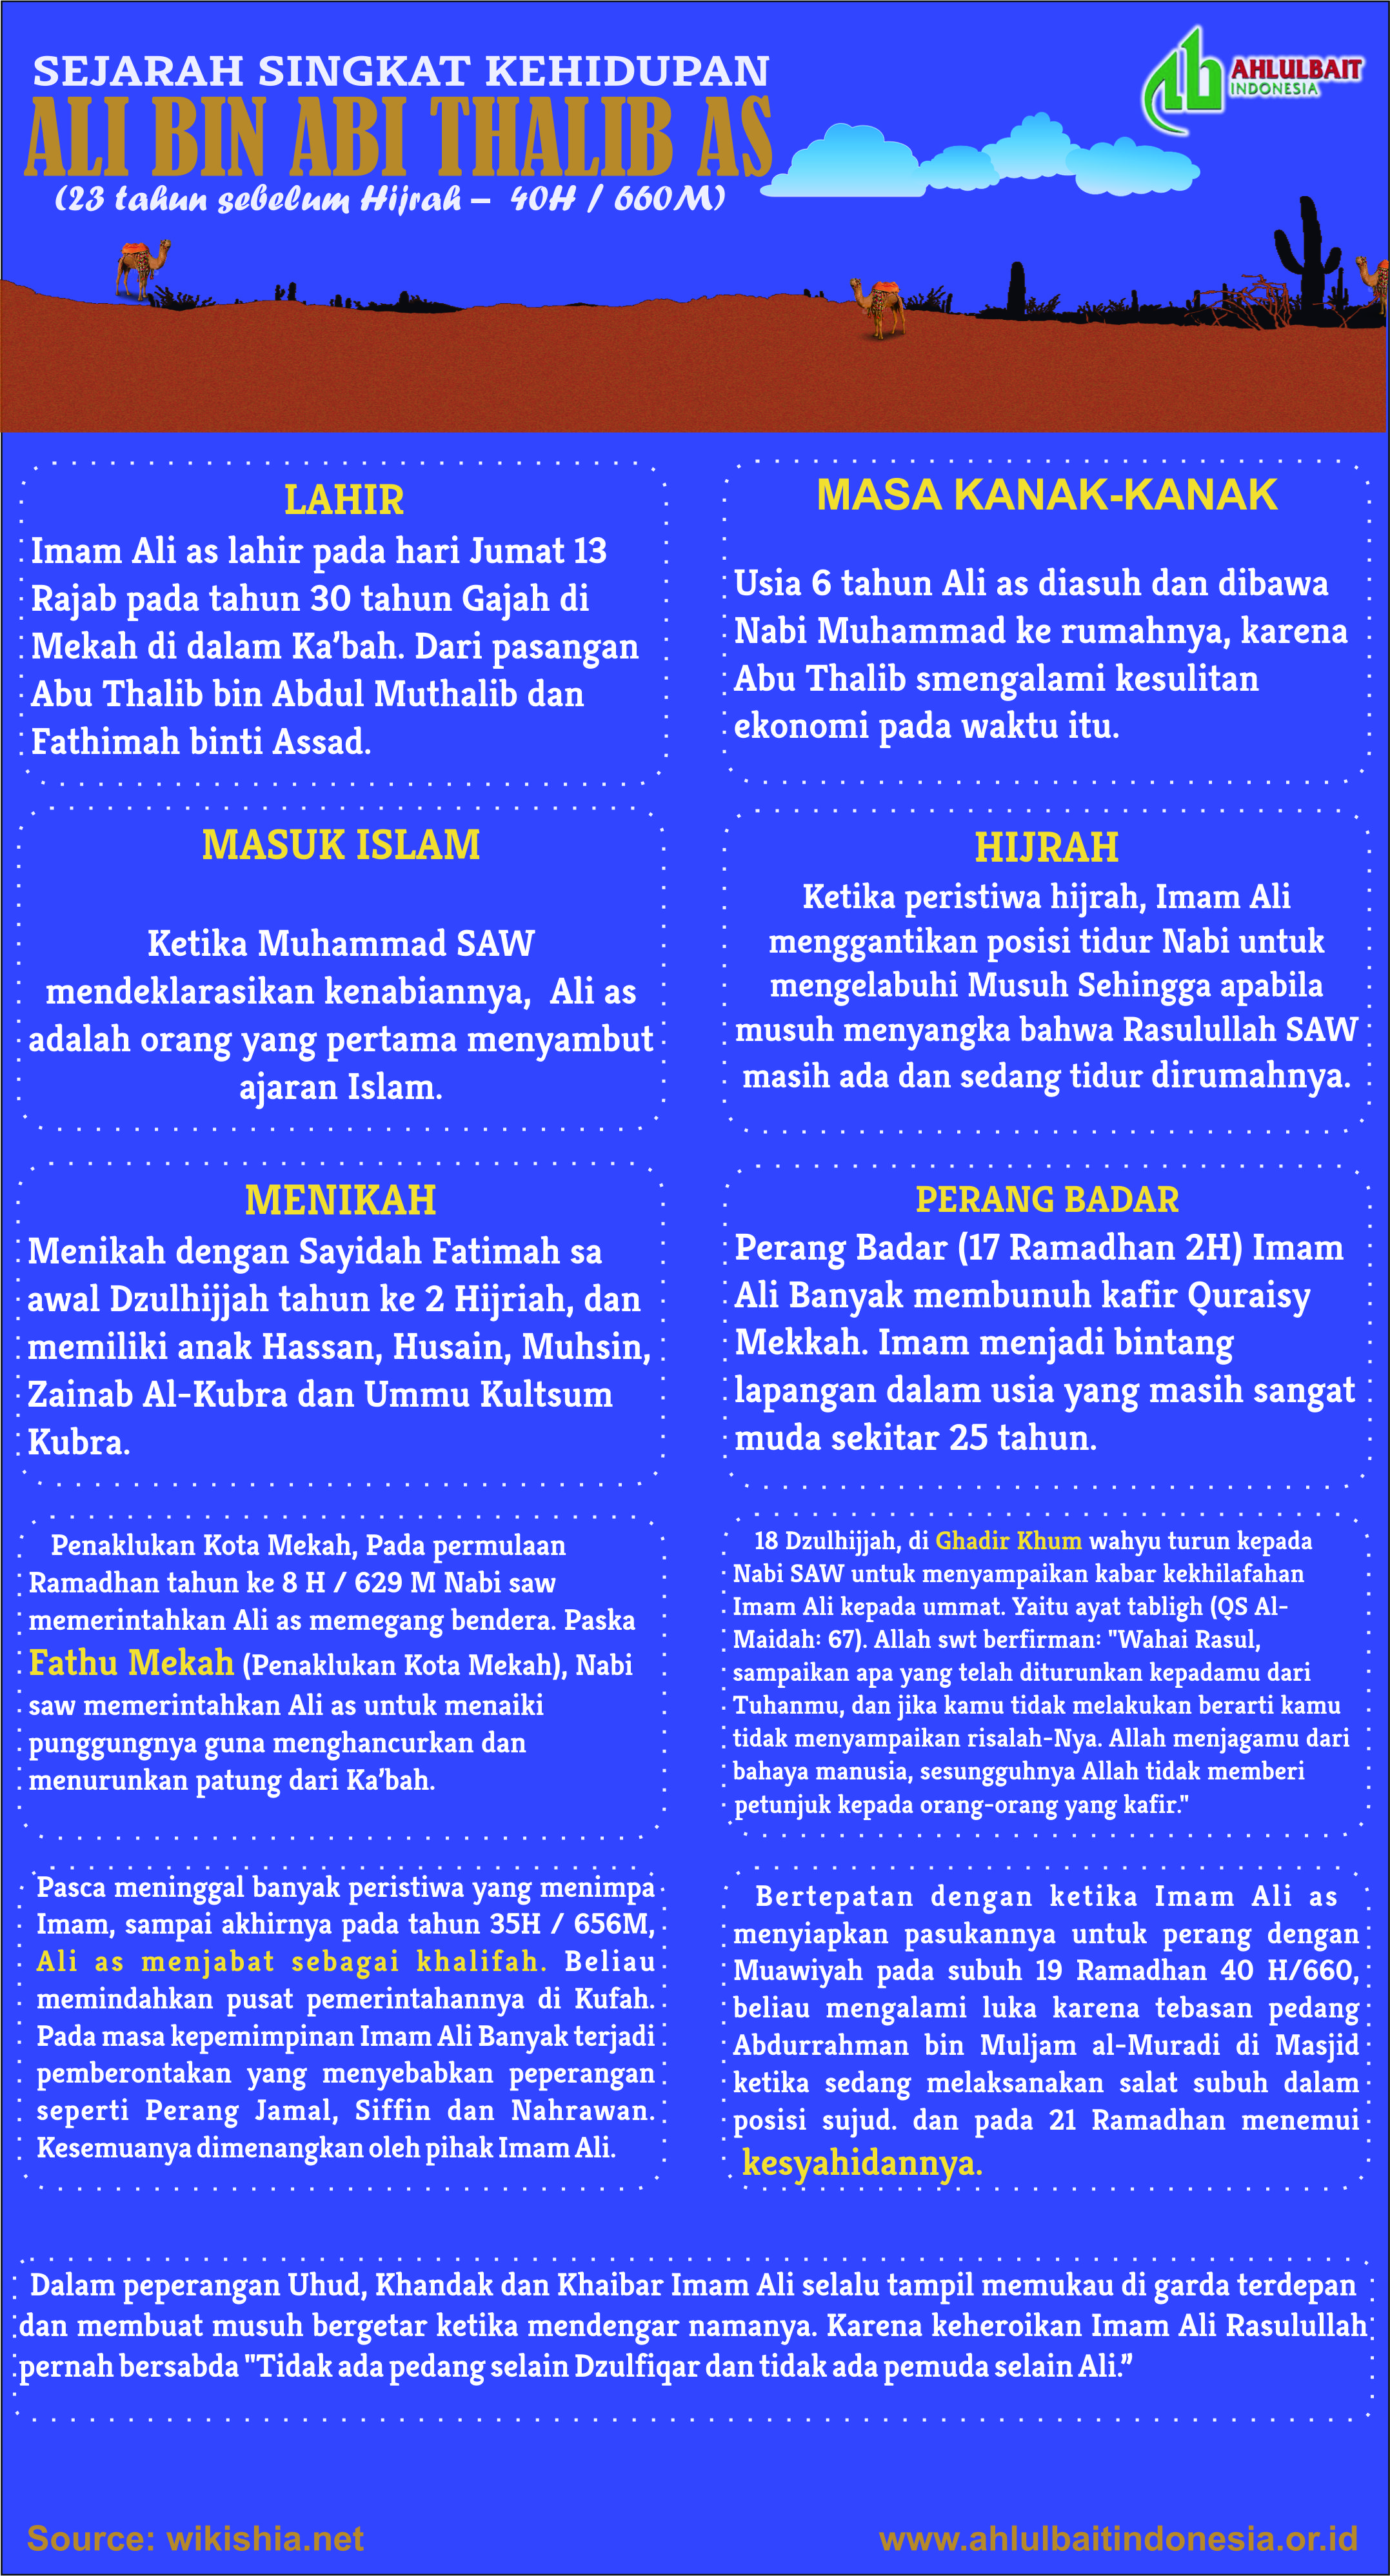 Infografis Sejarah Singkat Kehidupan Ali Bin Abi Thalib As Ahlulbait Indonesia